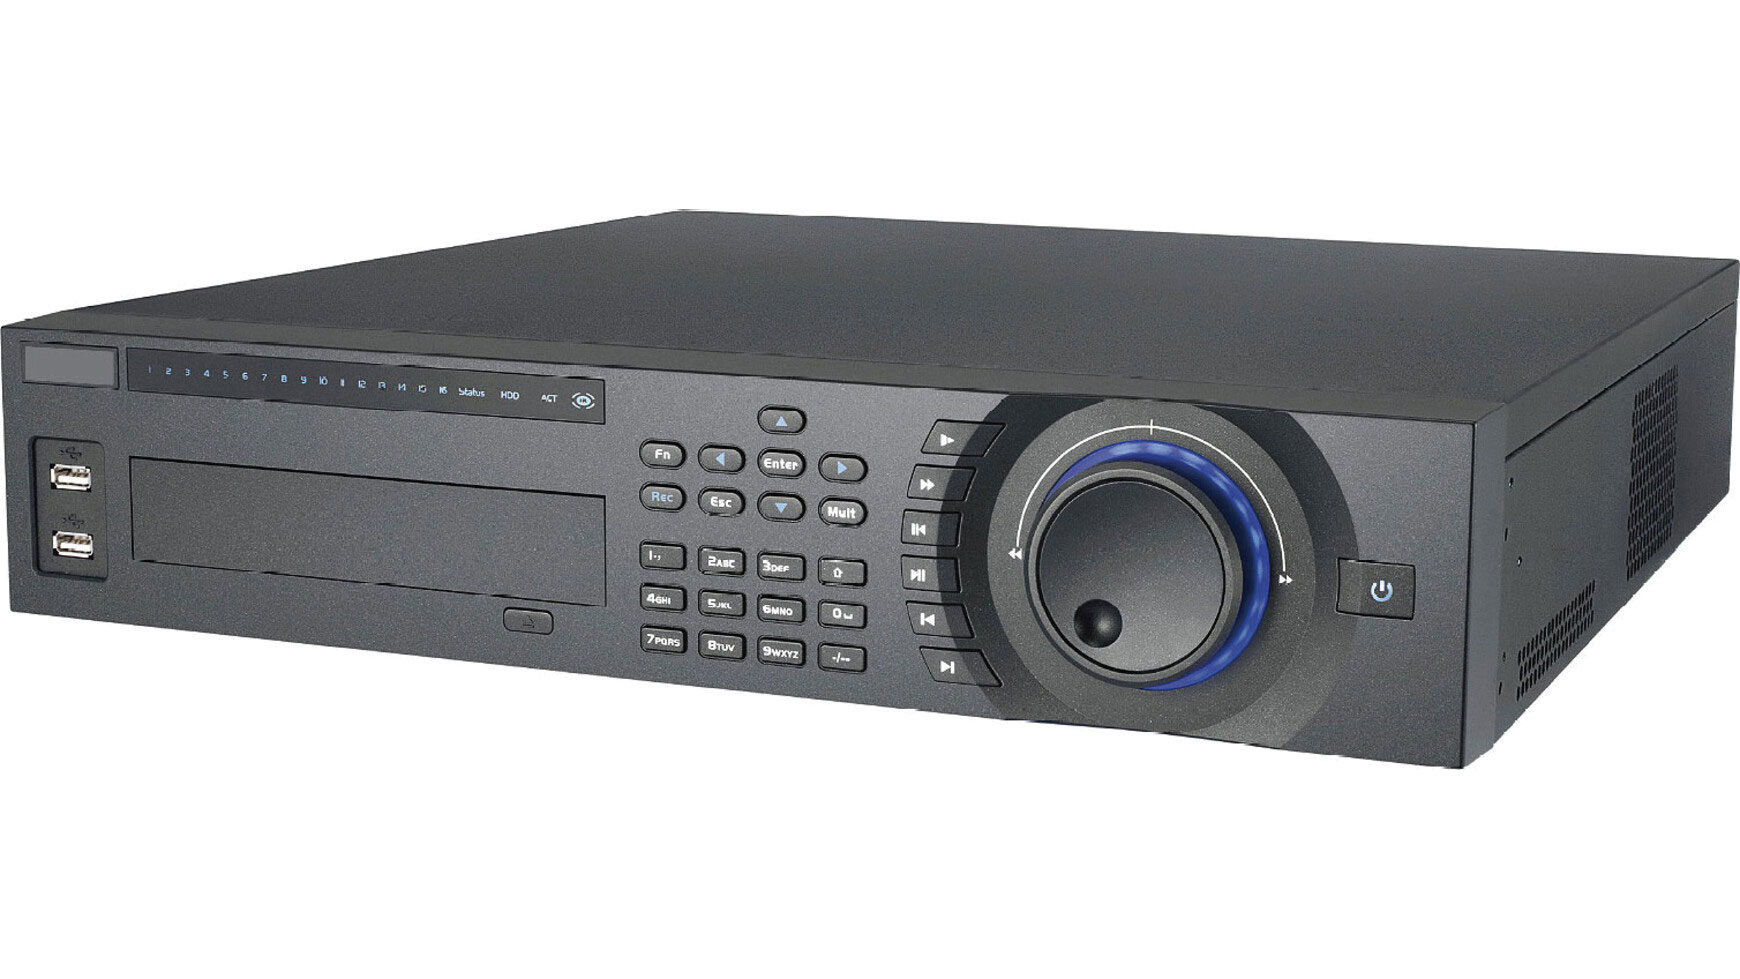 Dahua DVR-08HFU - Hibridni digitalni video snimač, 8 analognih ulaza + 8 kanala za IP kamere, H264 kompresija, web server